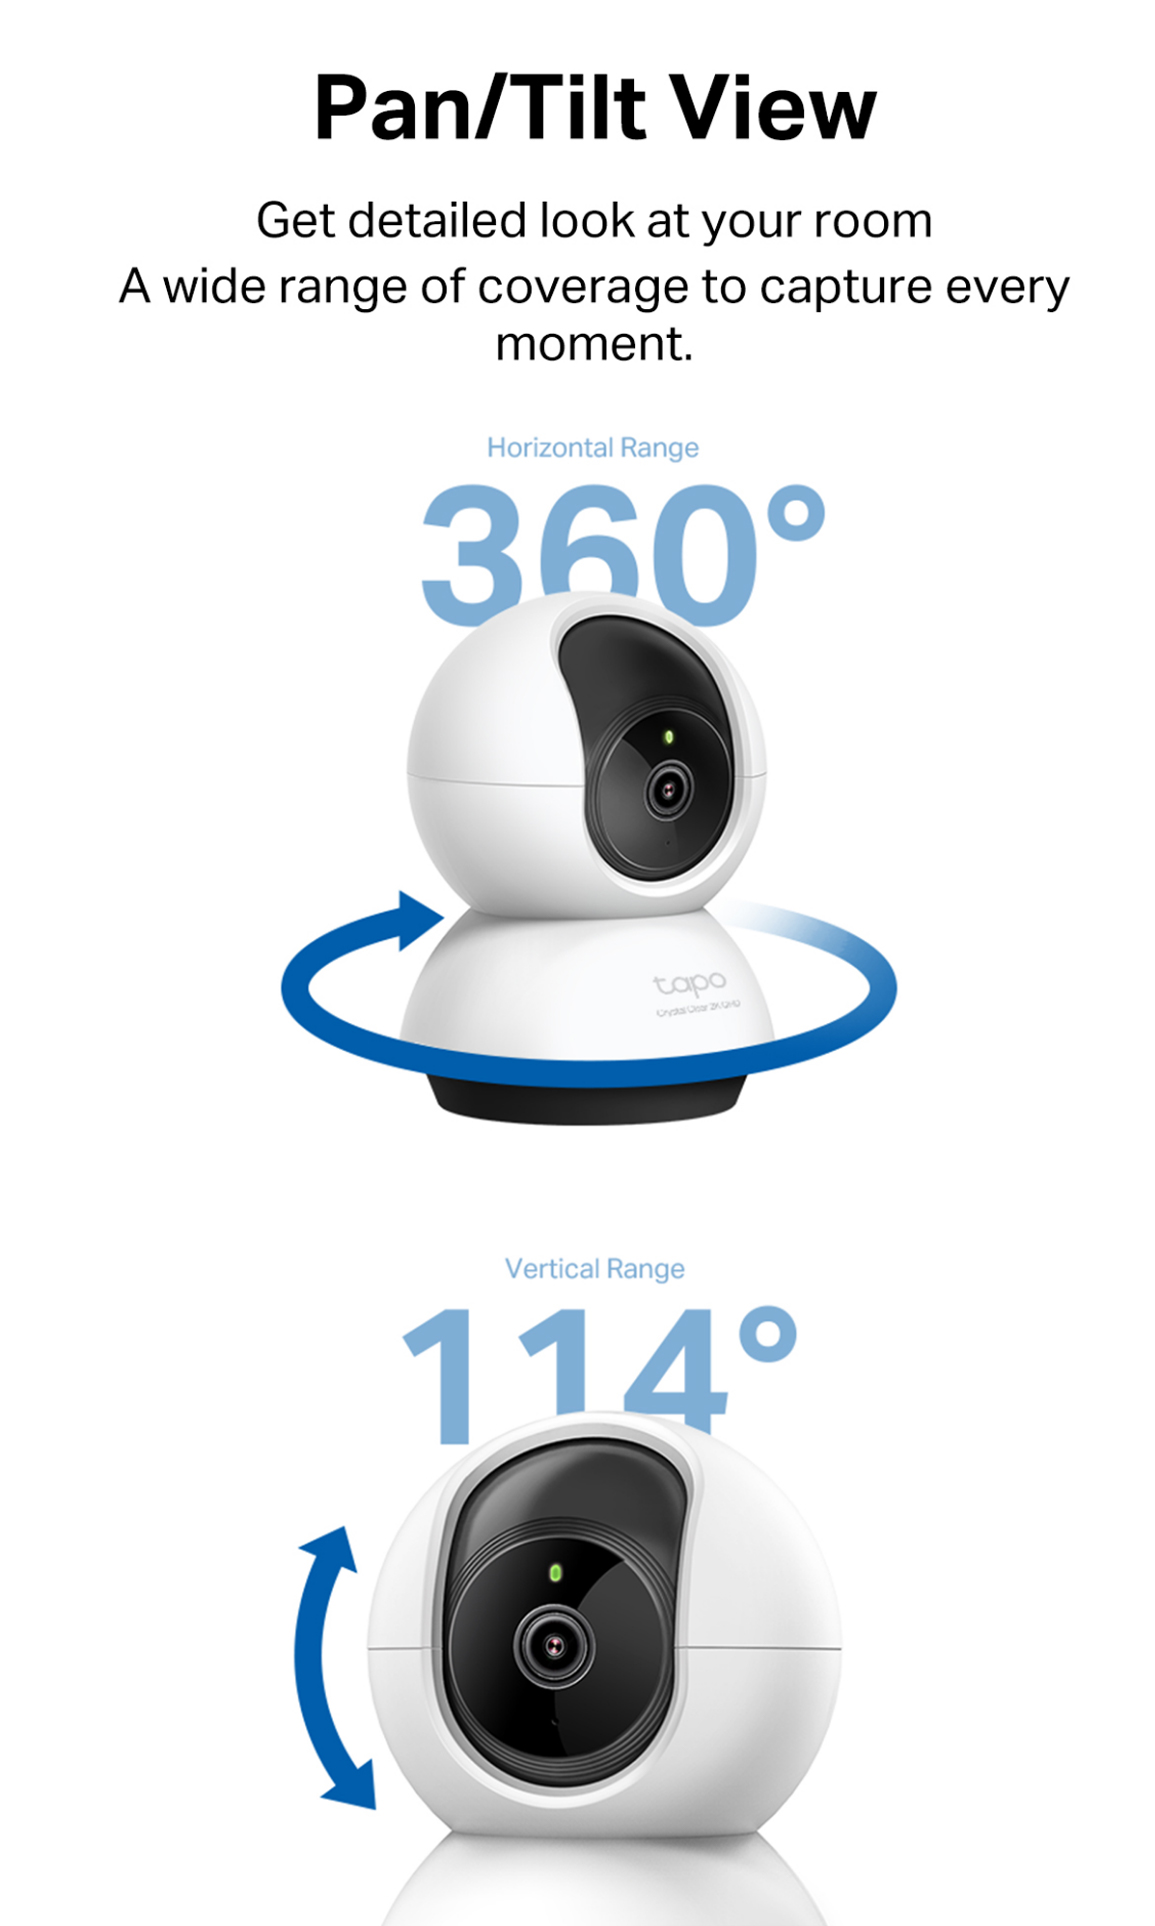 Tapo C220 - IA Cámara Vigilancia 360°, 2K 4MP QHD, Inteligente de IA »  Chollometro